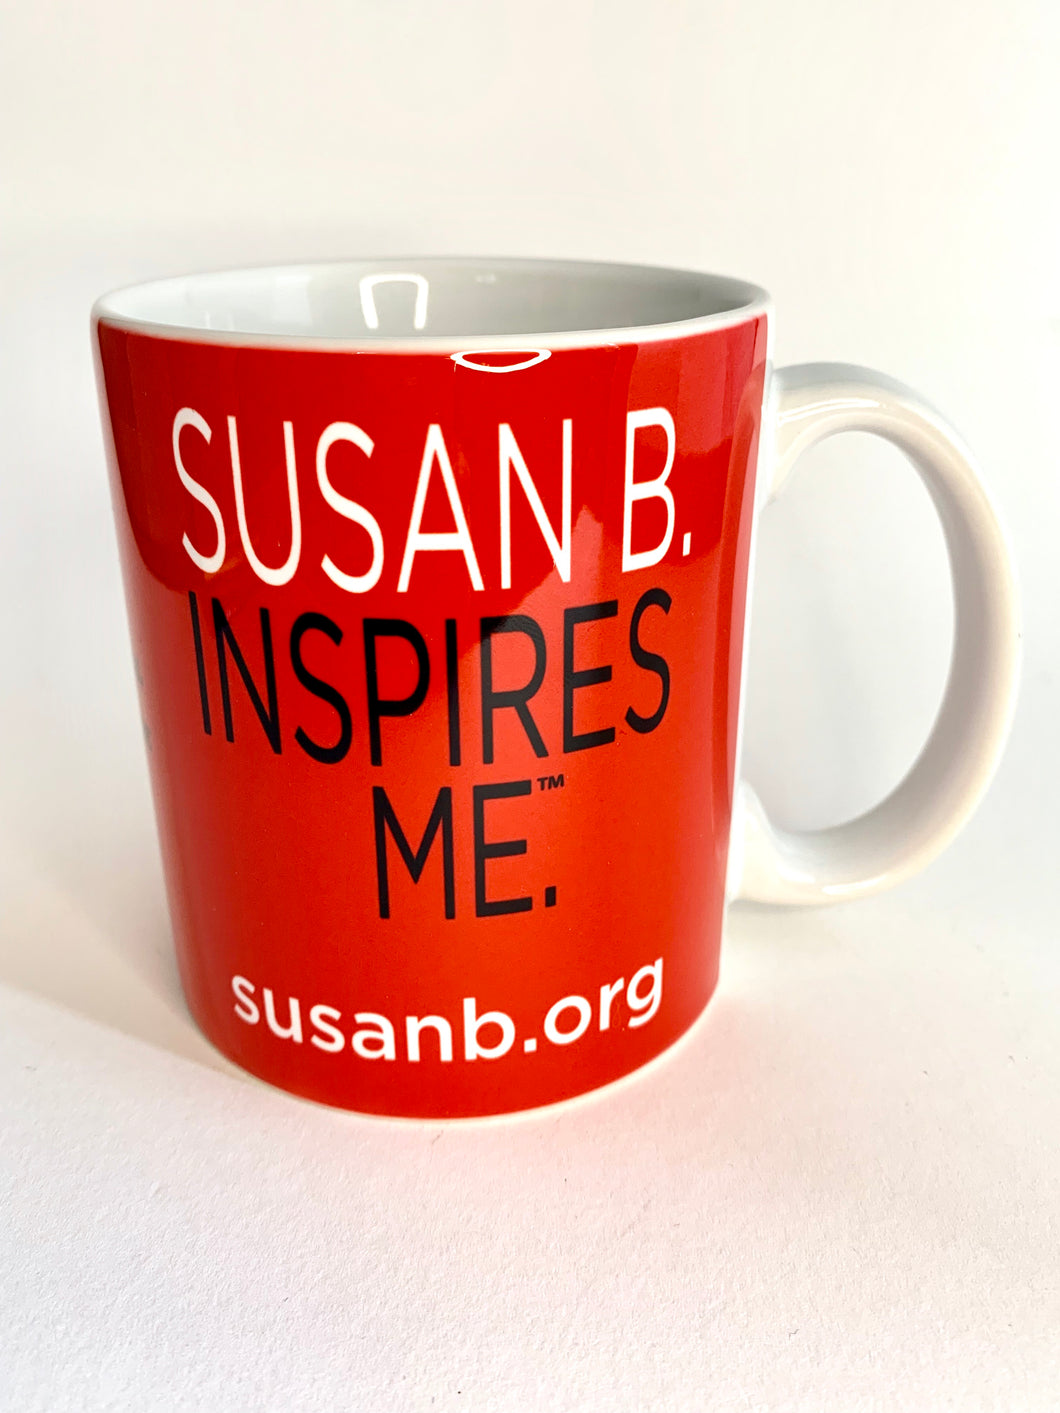 Susan B. Inspires Me Mug